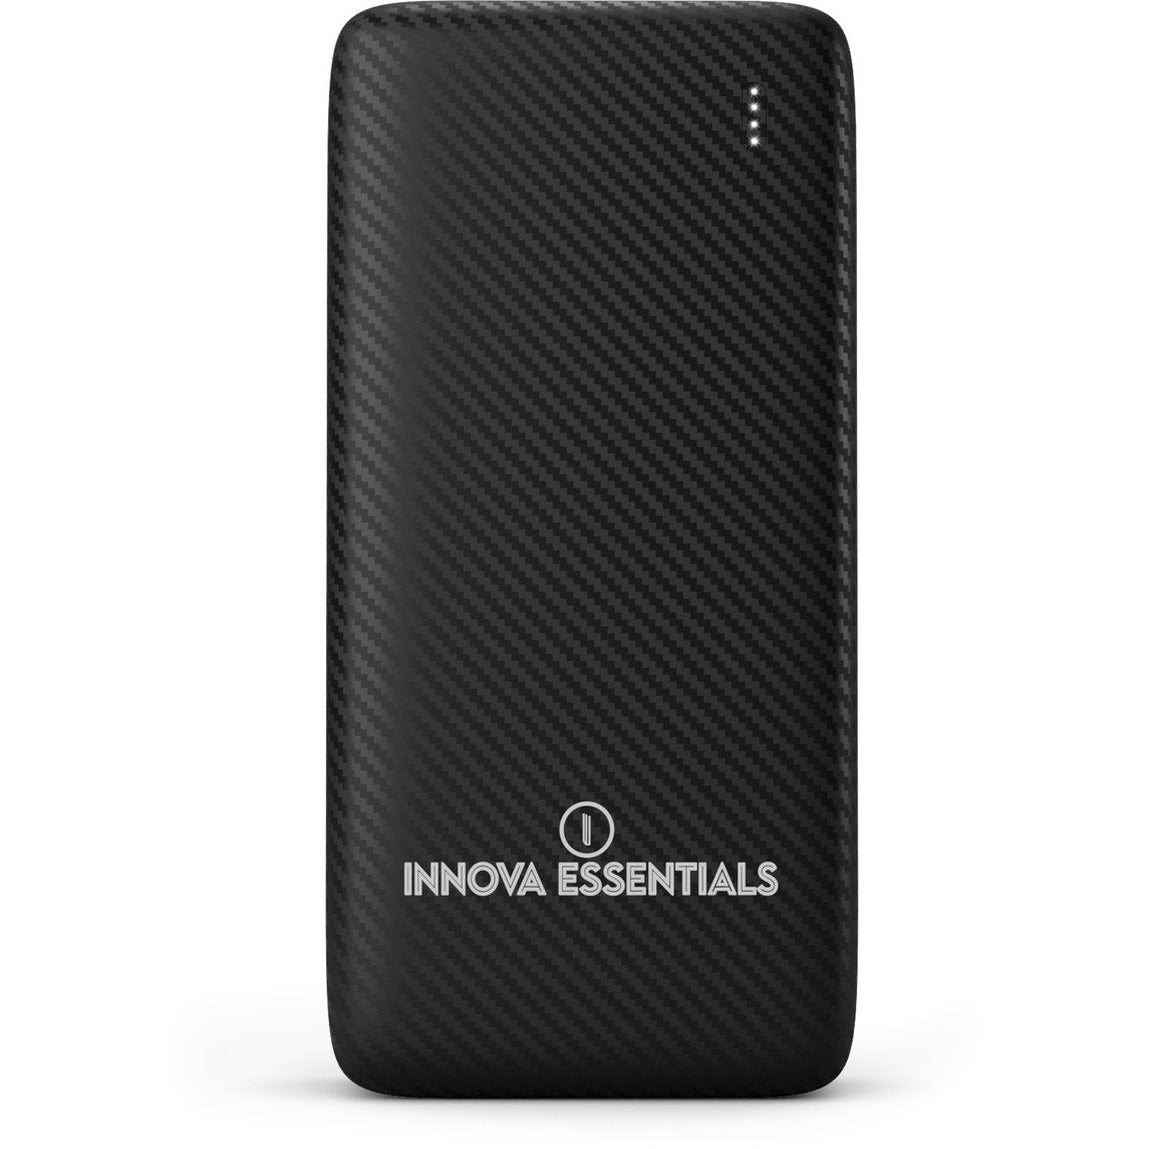 Innova Essentials Mini Powerbank 10.000 mAh - Innova EssentialsInnova Essentials